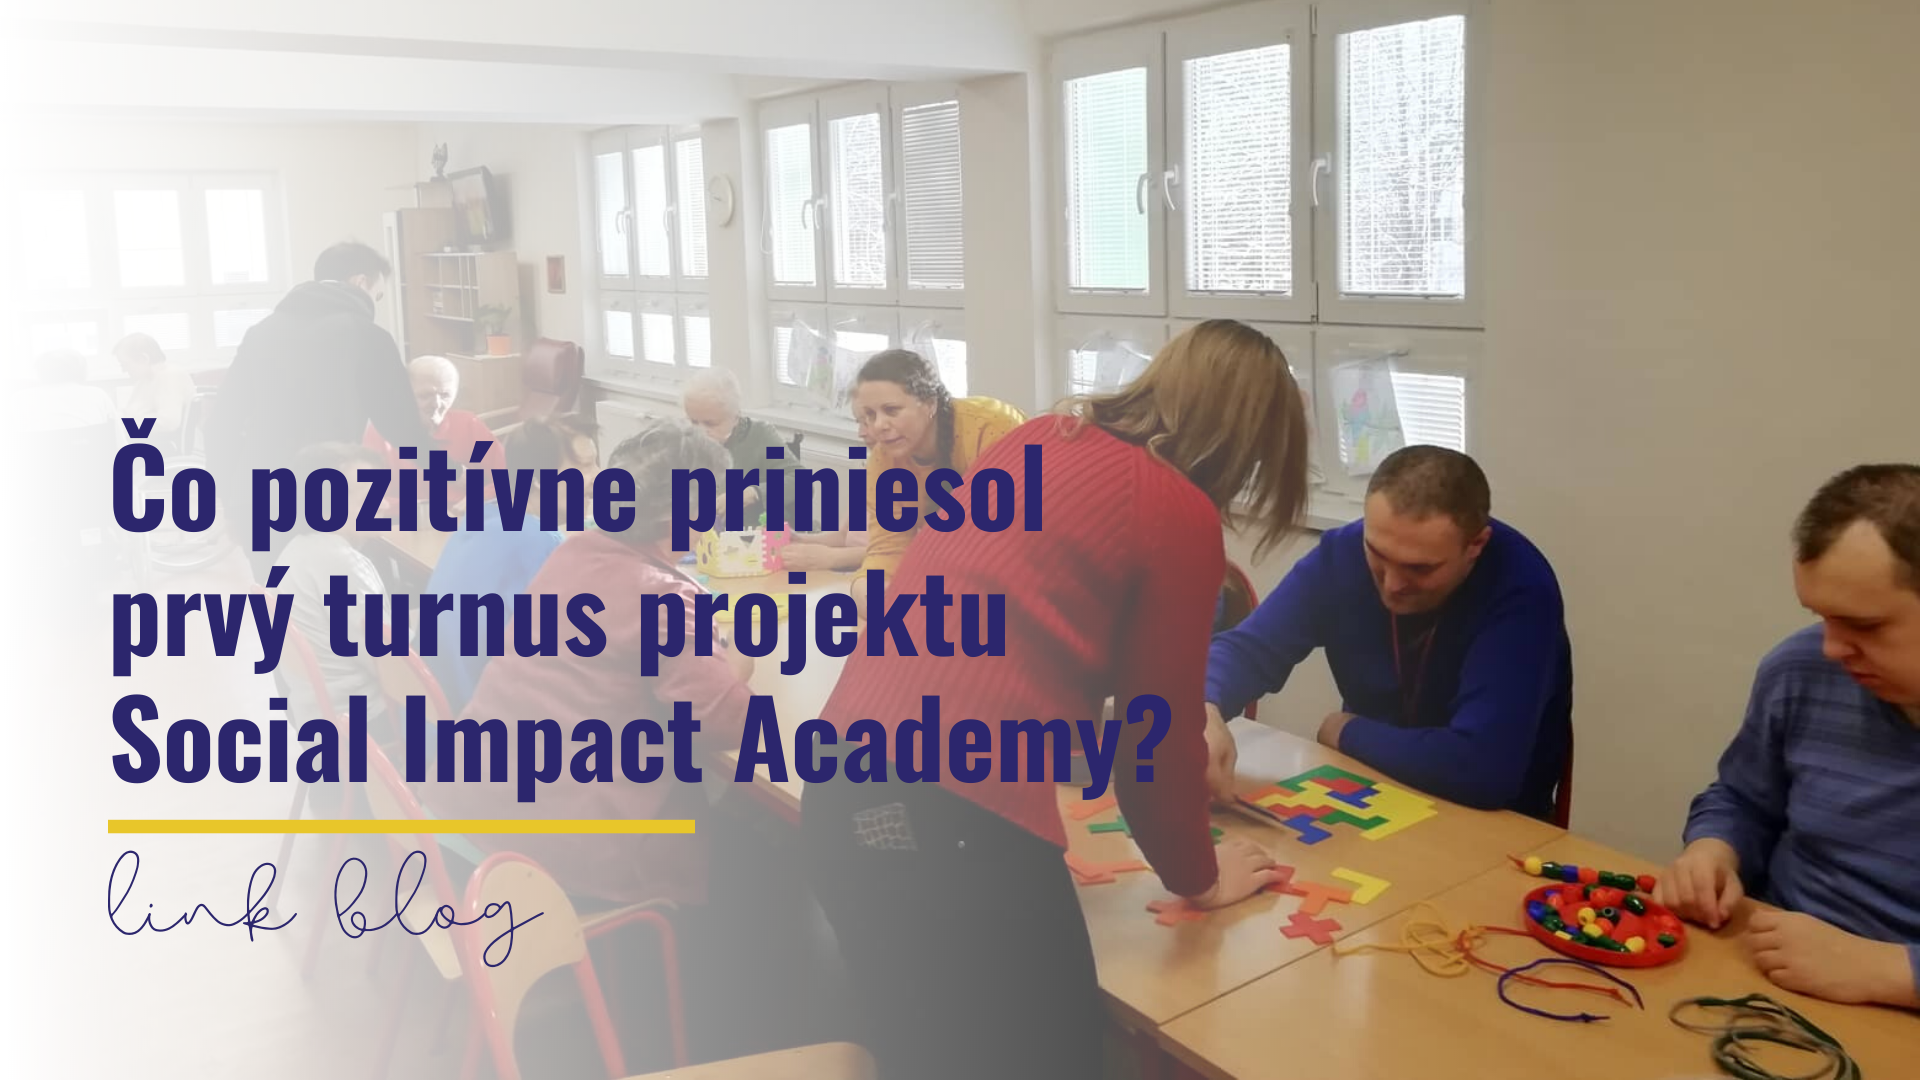 Čo pozitívne priniesol prvý turnus projektu Social Impact Academy?